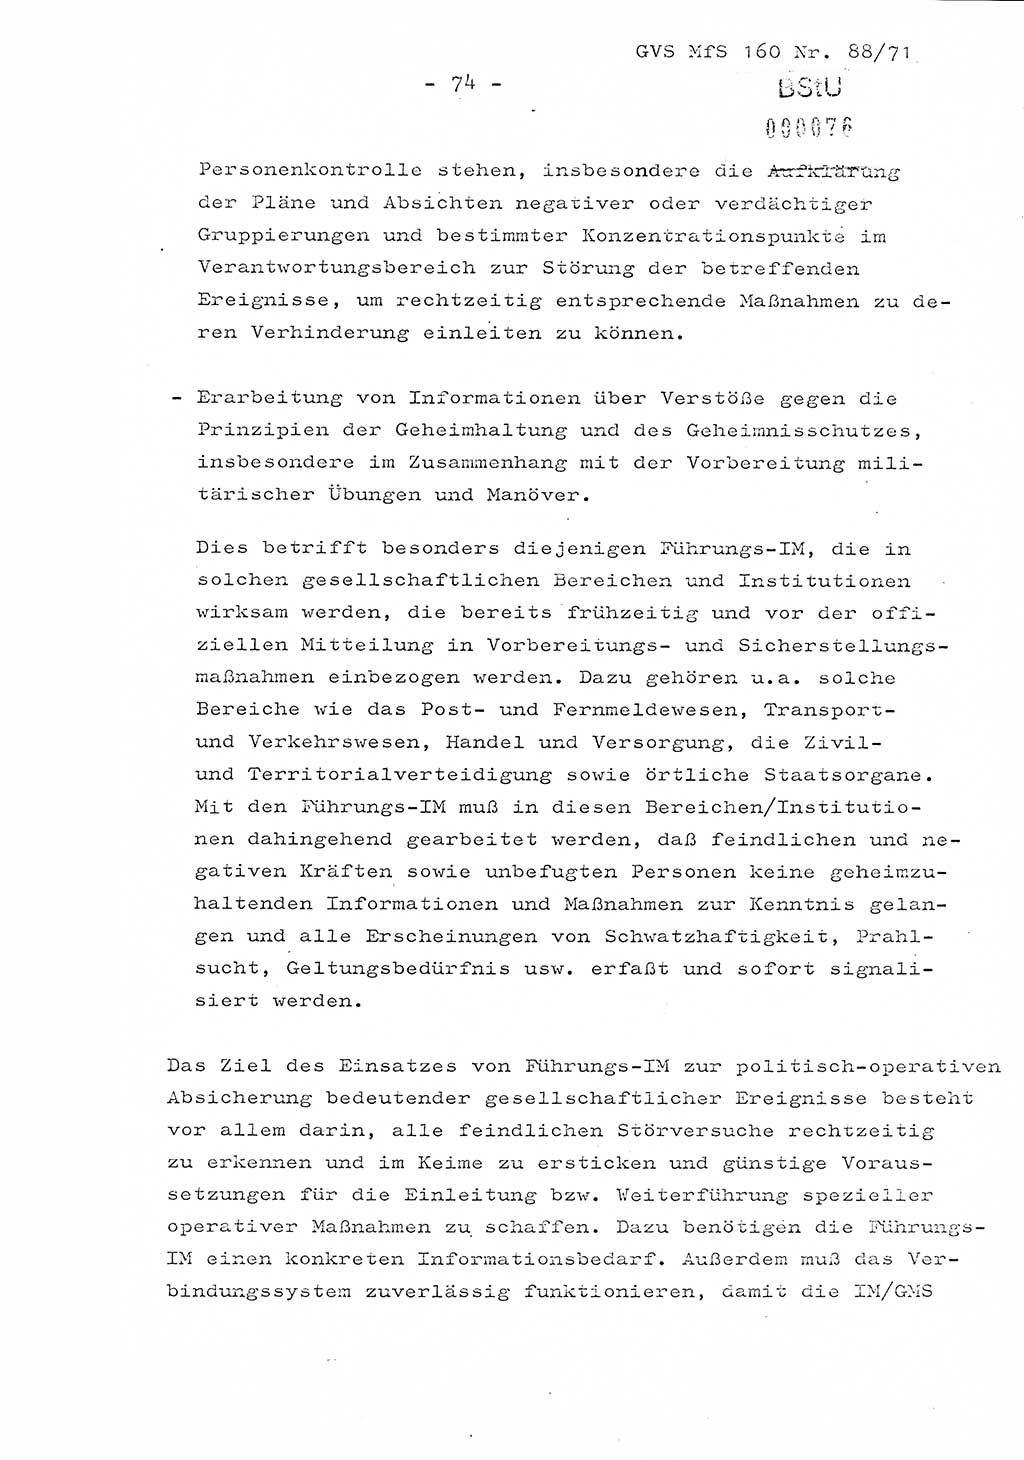 Dissertation Oberstleutnant Josef Schwarz (BV Schwerin), Major Fritz Amm (JHS), Hauptmann Peter Gräßler (JHS), Ministerium für Staatssicherheit (MfS) [Deutsche Demokratische Republik (DDR)], Juristische Hochschule (JHS), Geheime Verschlußsache (GVS) 160-88/71, Potsdam 1972, Seite 74 (Diss. MfS DDR JHS GVS 160-88/71 1972, S. 74)